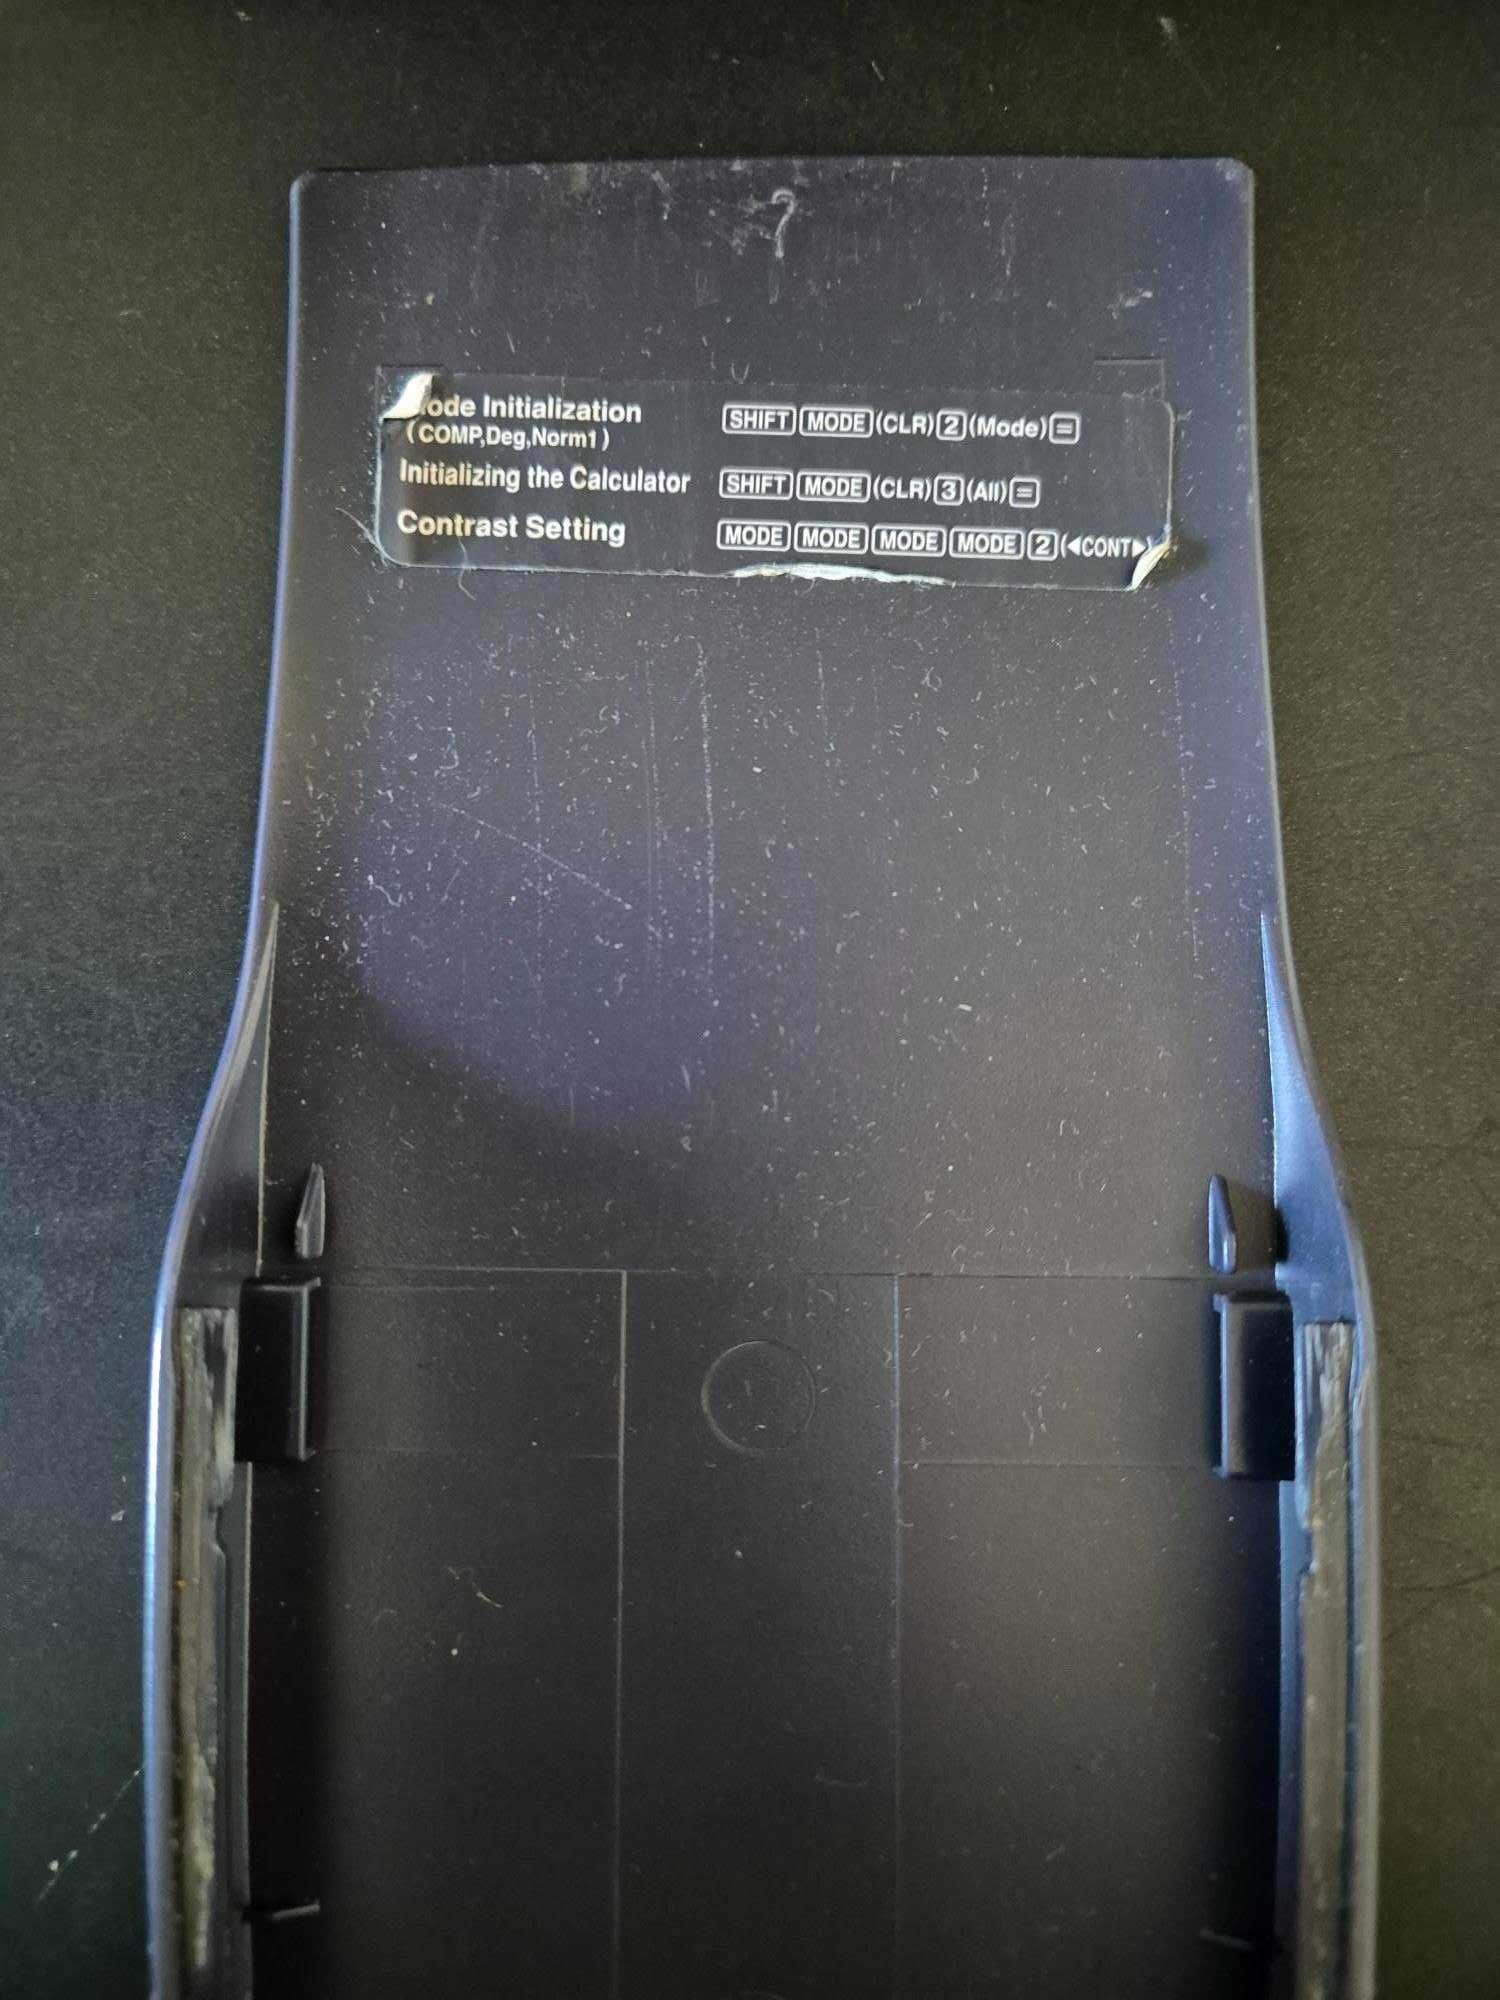 Calculadora Ciêntifica Casio fx-82ms